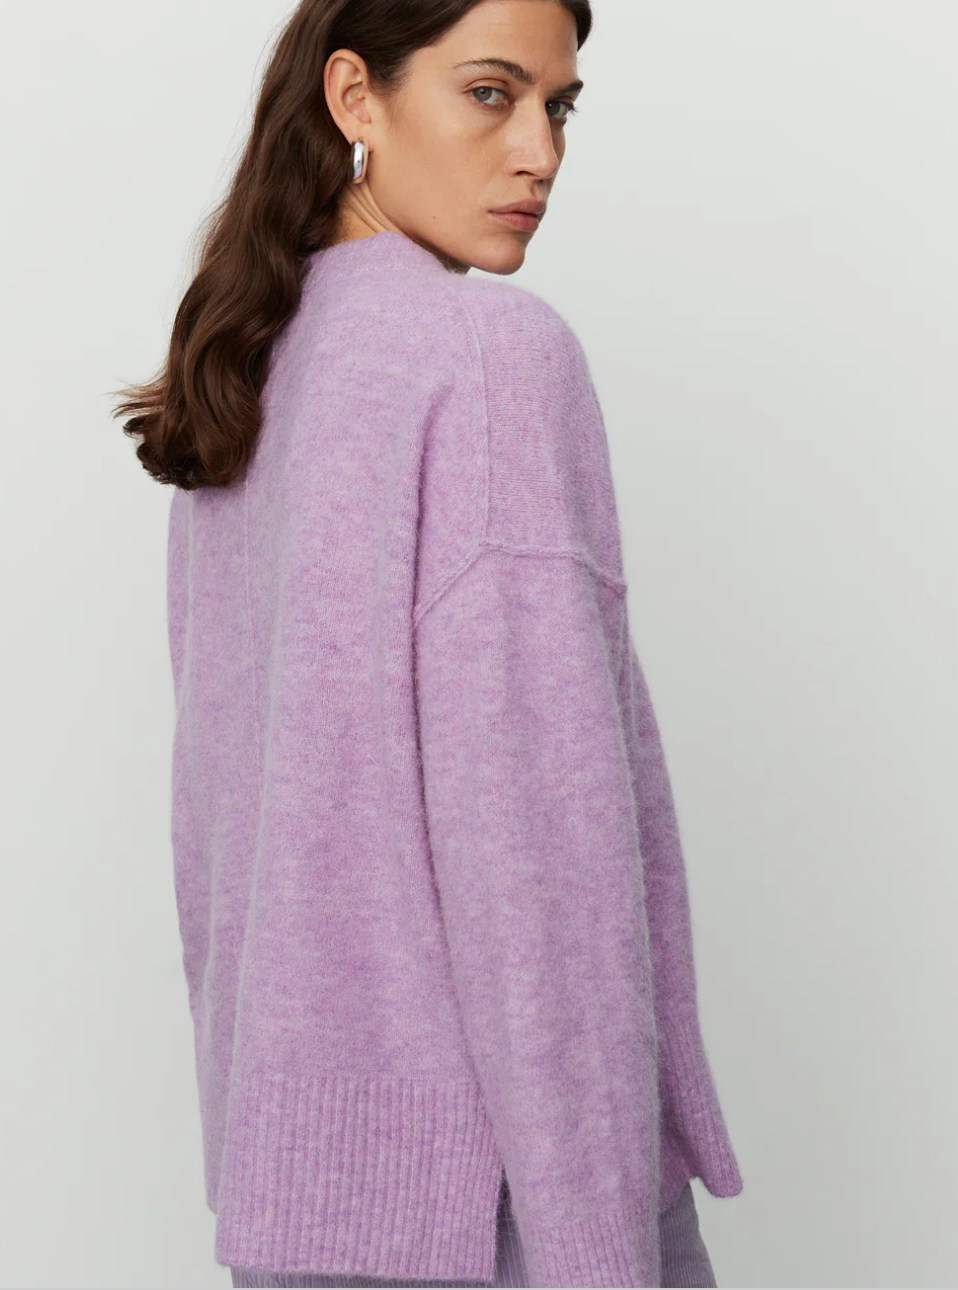 Josie Light Violet Sweater